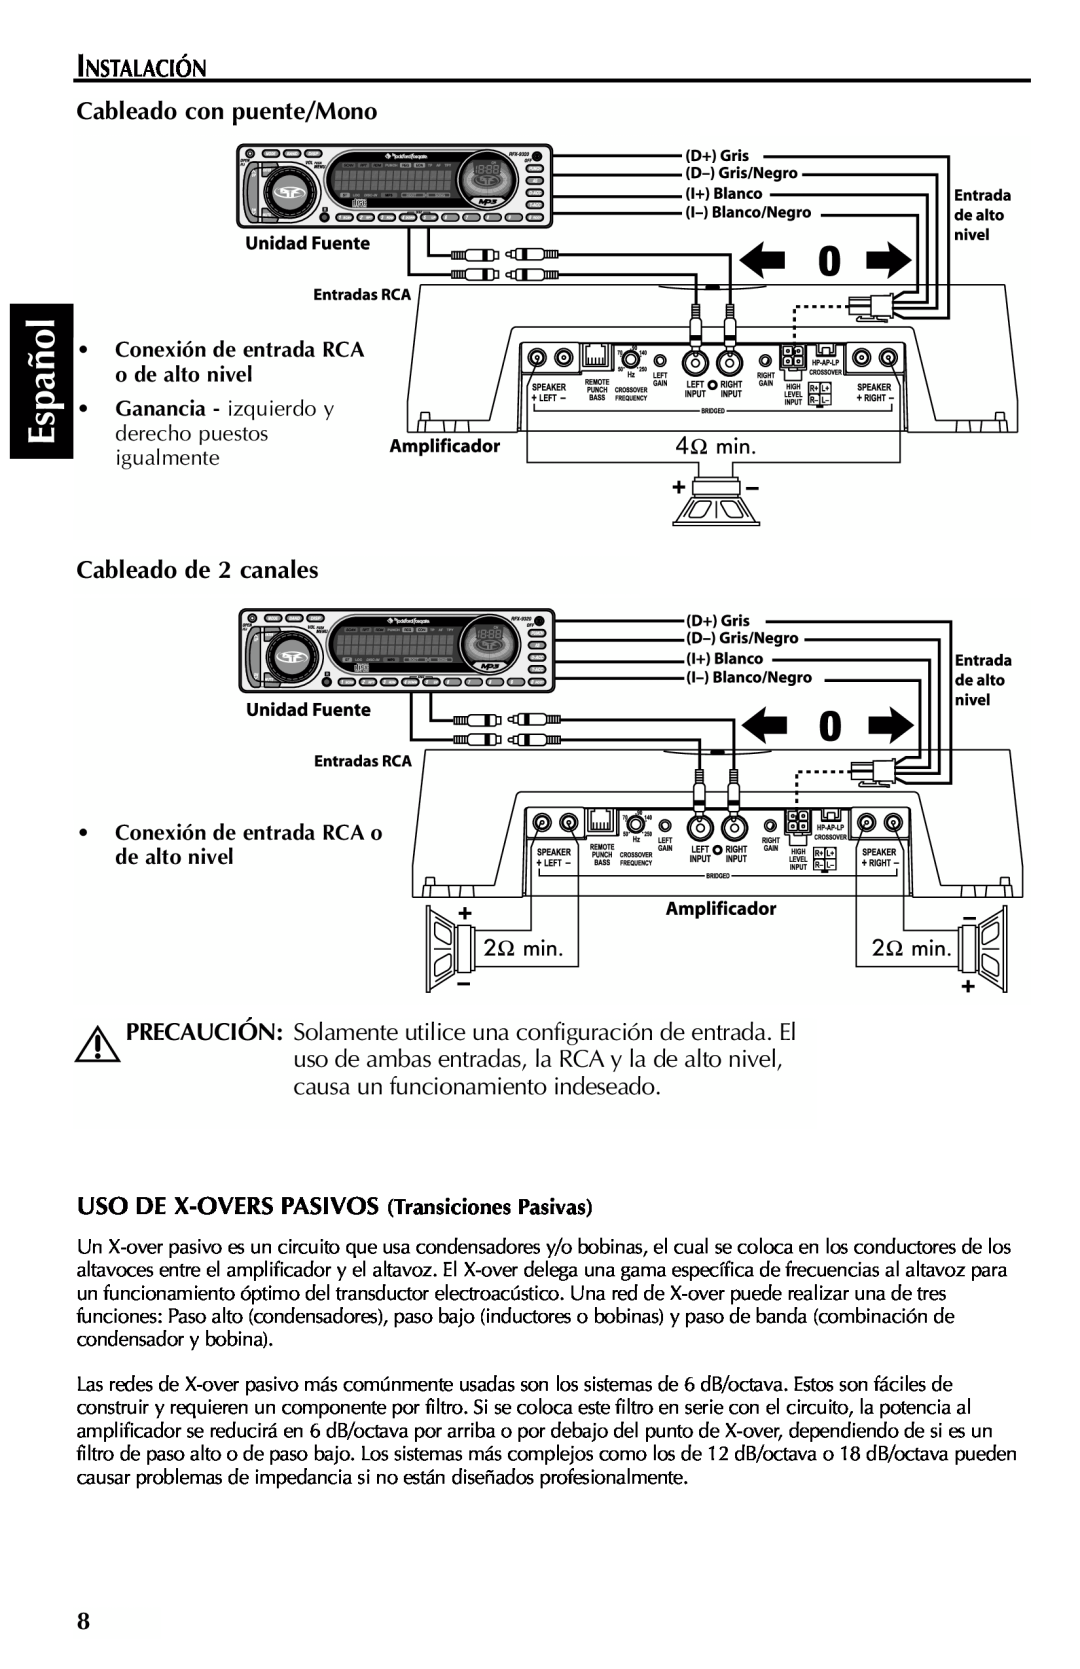 Rockford Fosgate 301SP, 401SP manual Español, INSTALACIÓN Cableado con puente/Mono, Cableado de 2 canales 